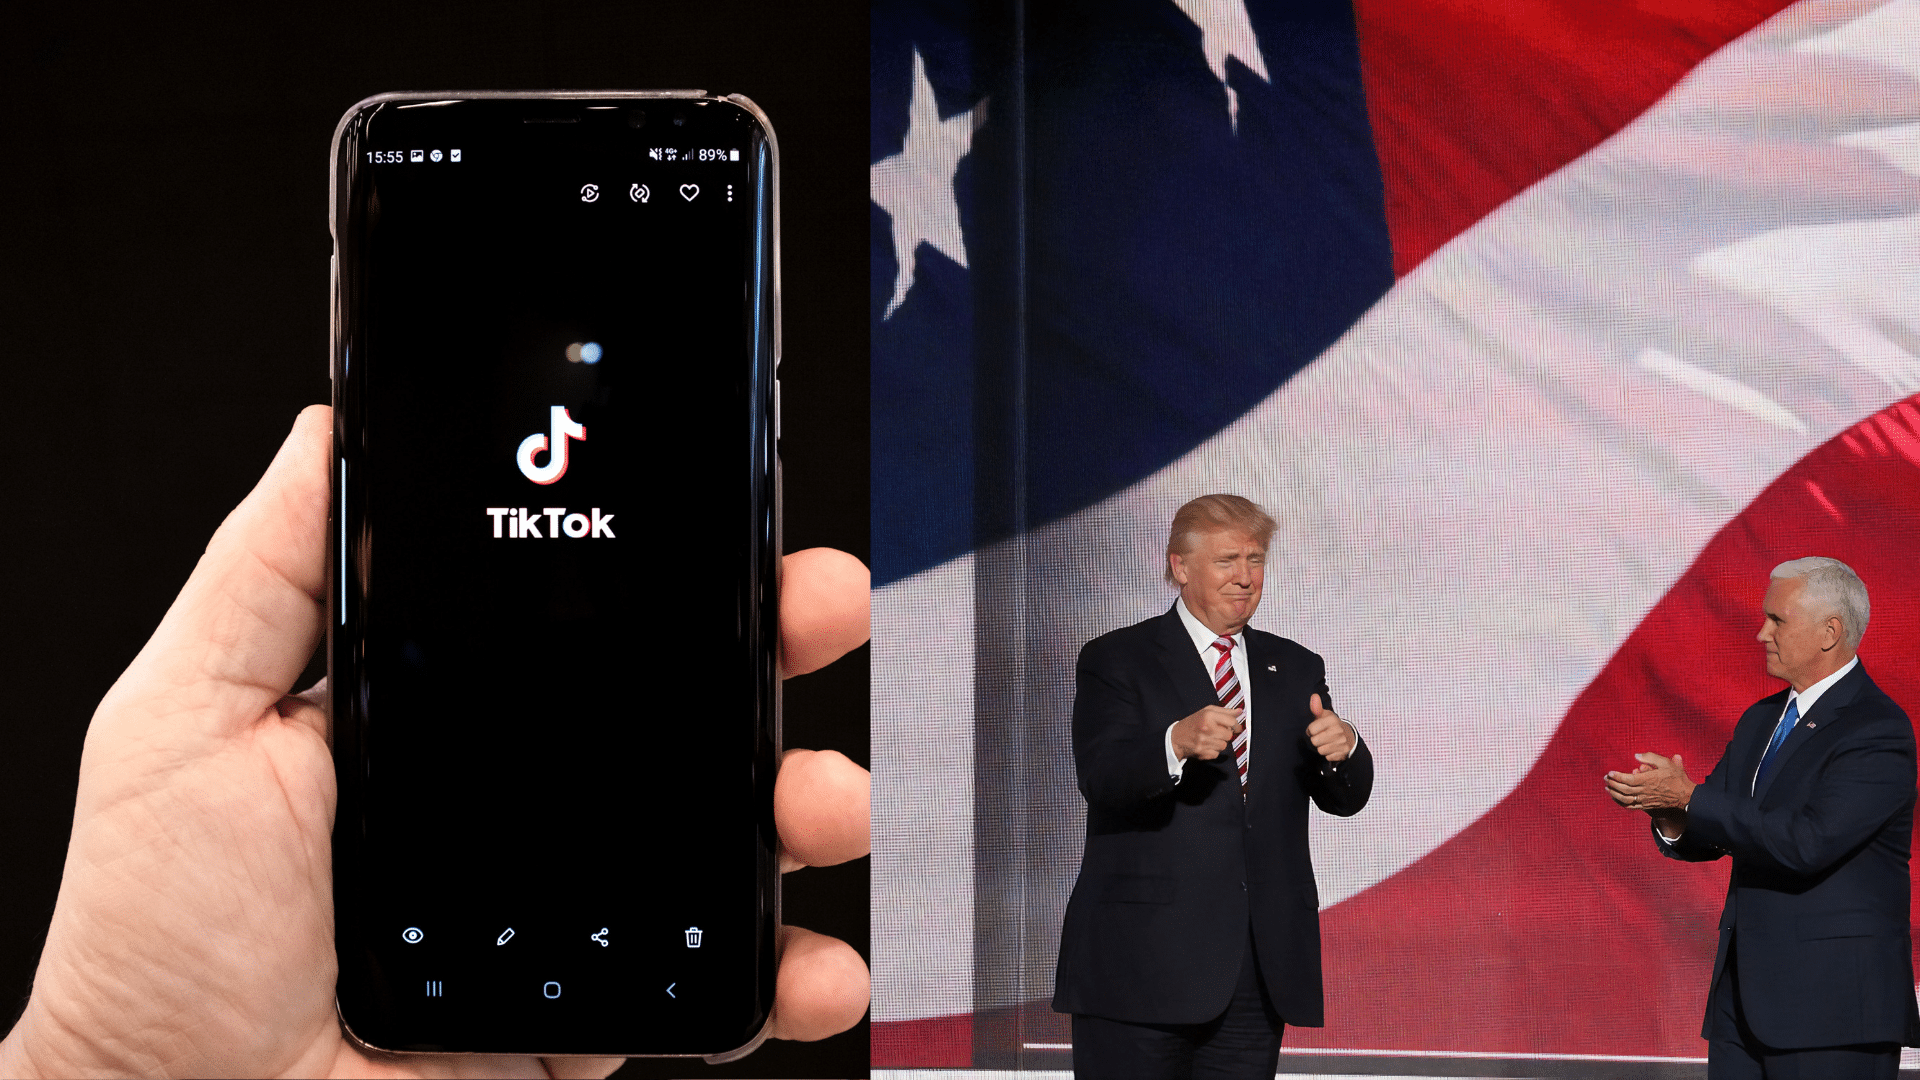 Trump and TikTok